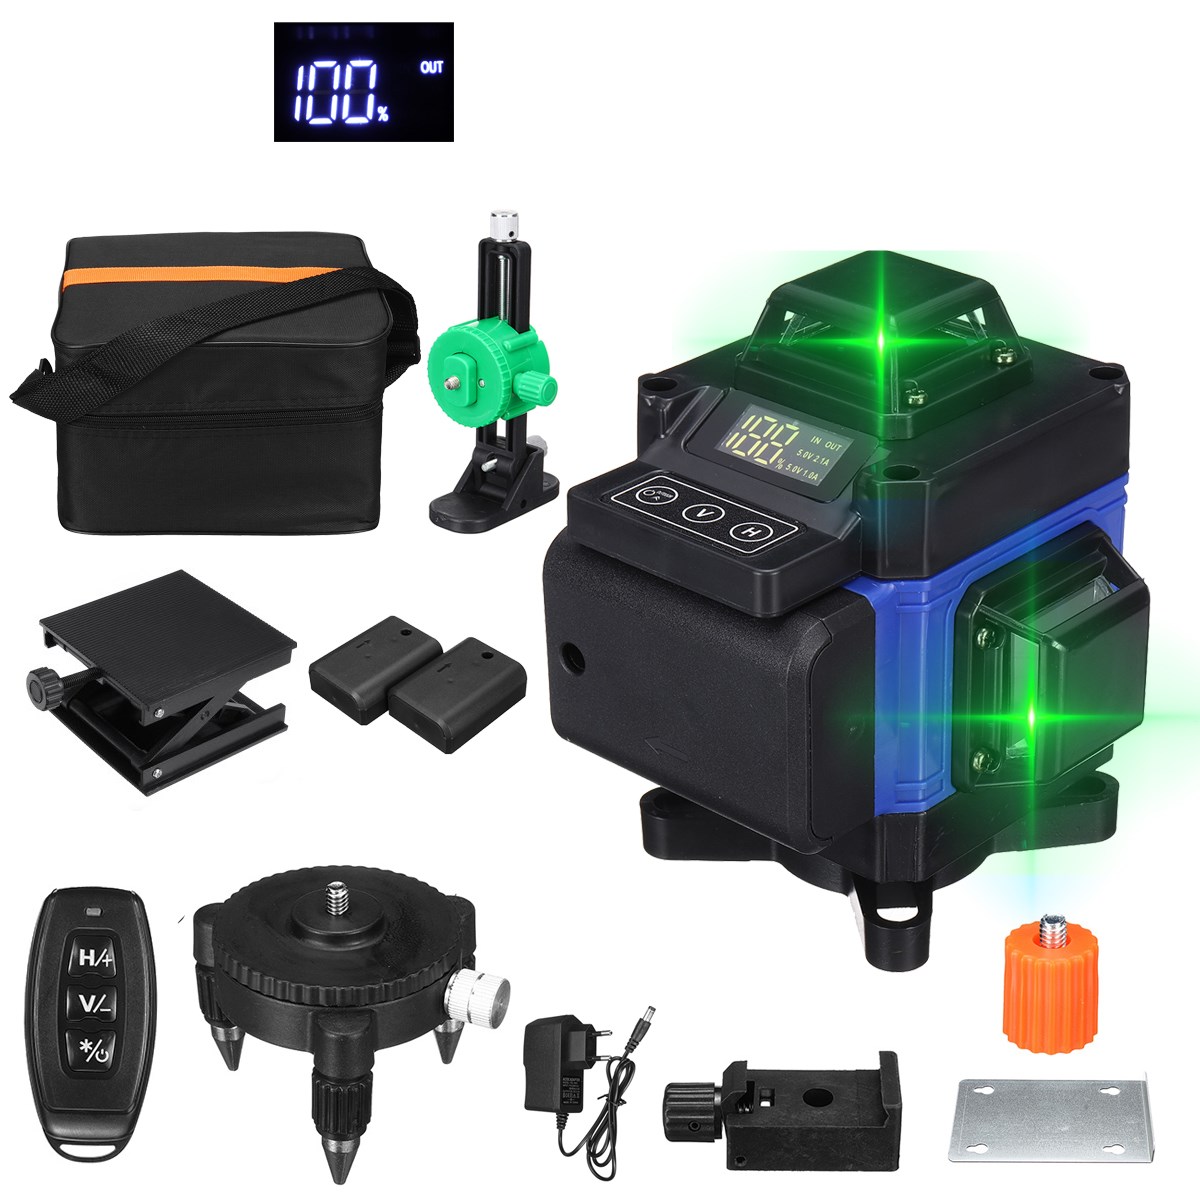 Poziomica laserowa 16 line Green Laser Level App z EU za $40.99 / ~166zł